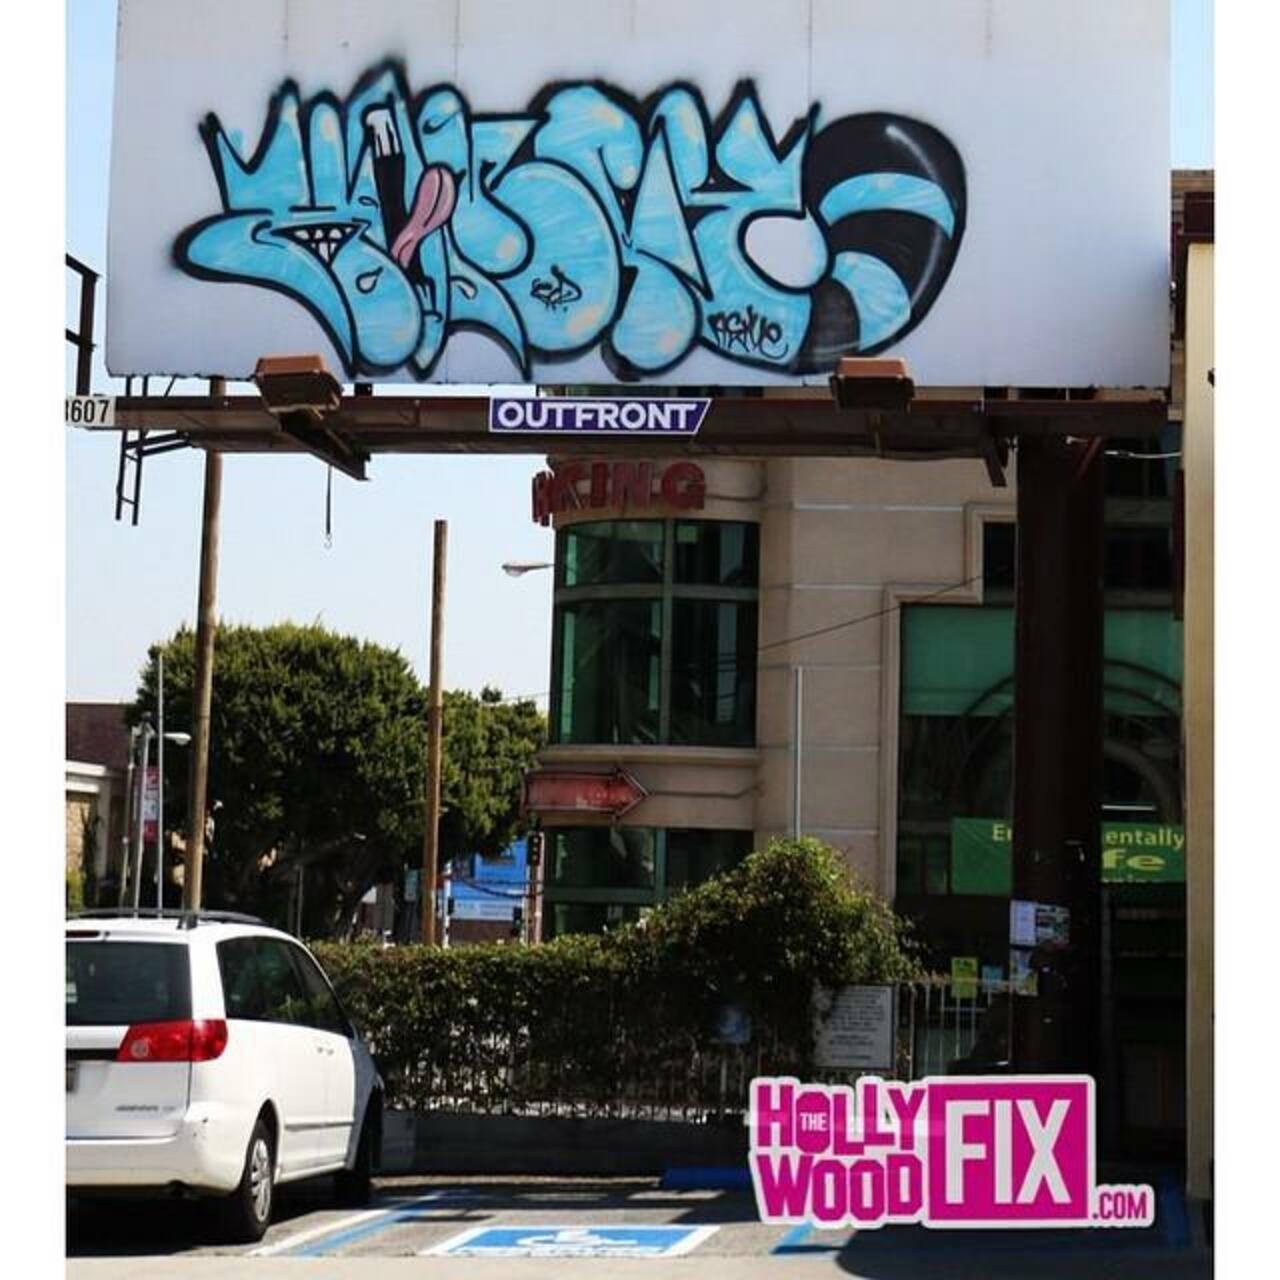 #Komfy #BillboardGraff #BillboardGraffiti #Art #StreetArt #StreetArtLA #LaGraffiti #LAGraff #Graffiti • Go To TheHo… http://t.co/PEUSWclkoN